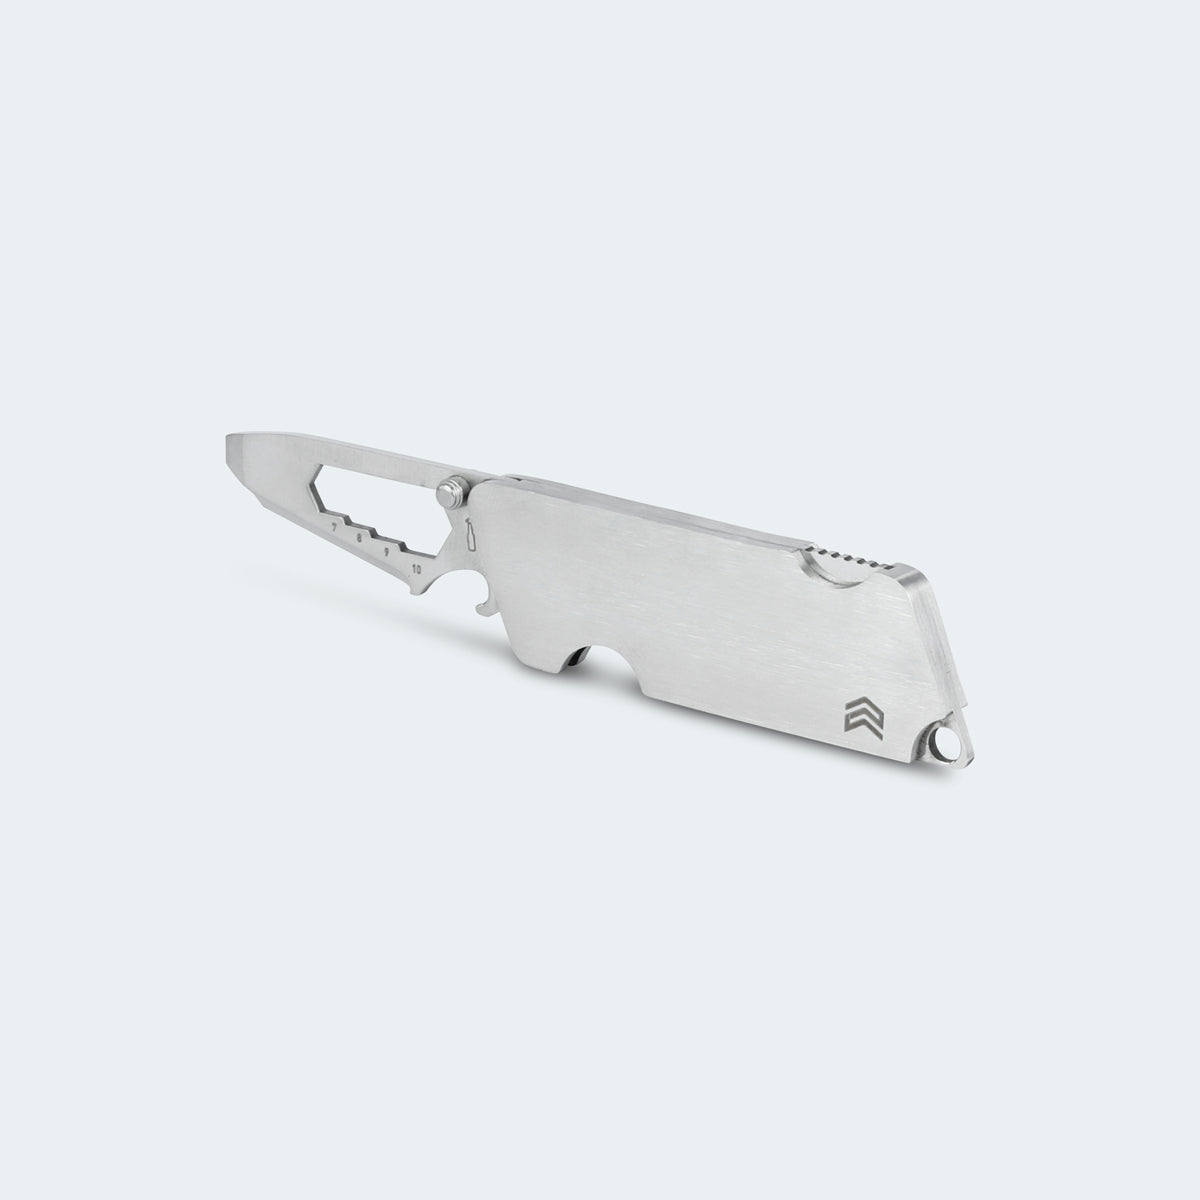 Canivete E-Cimo Tool Inox Cabo Inox - 4545/2T